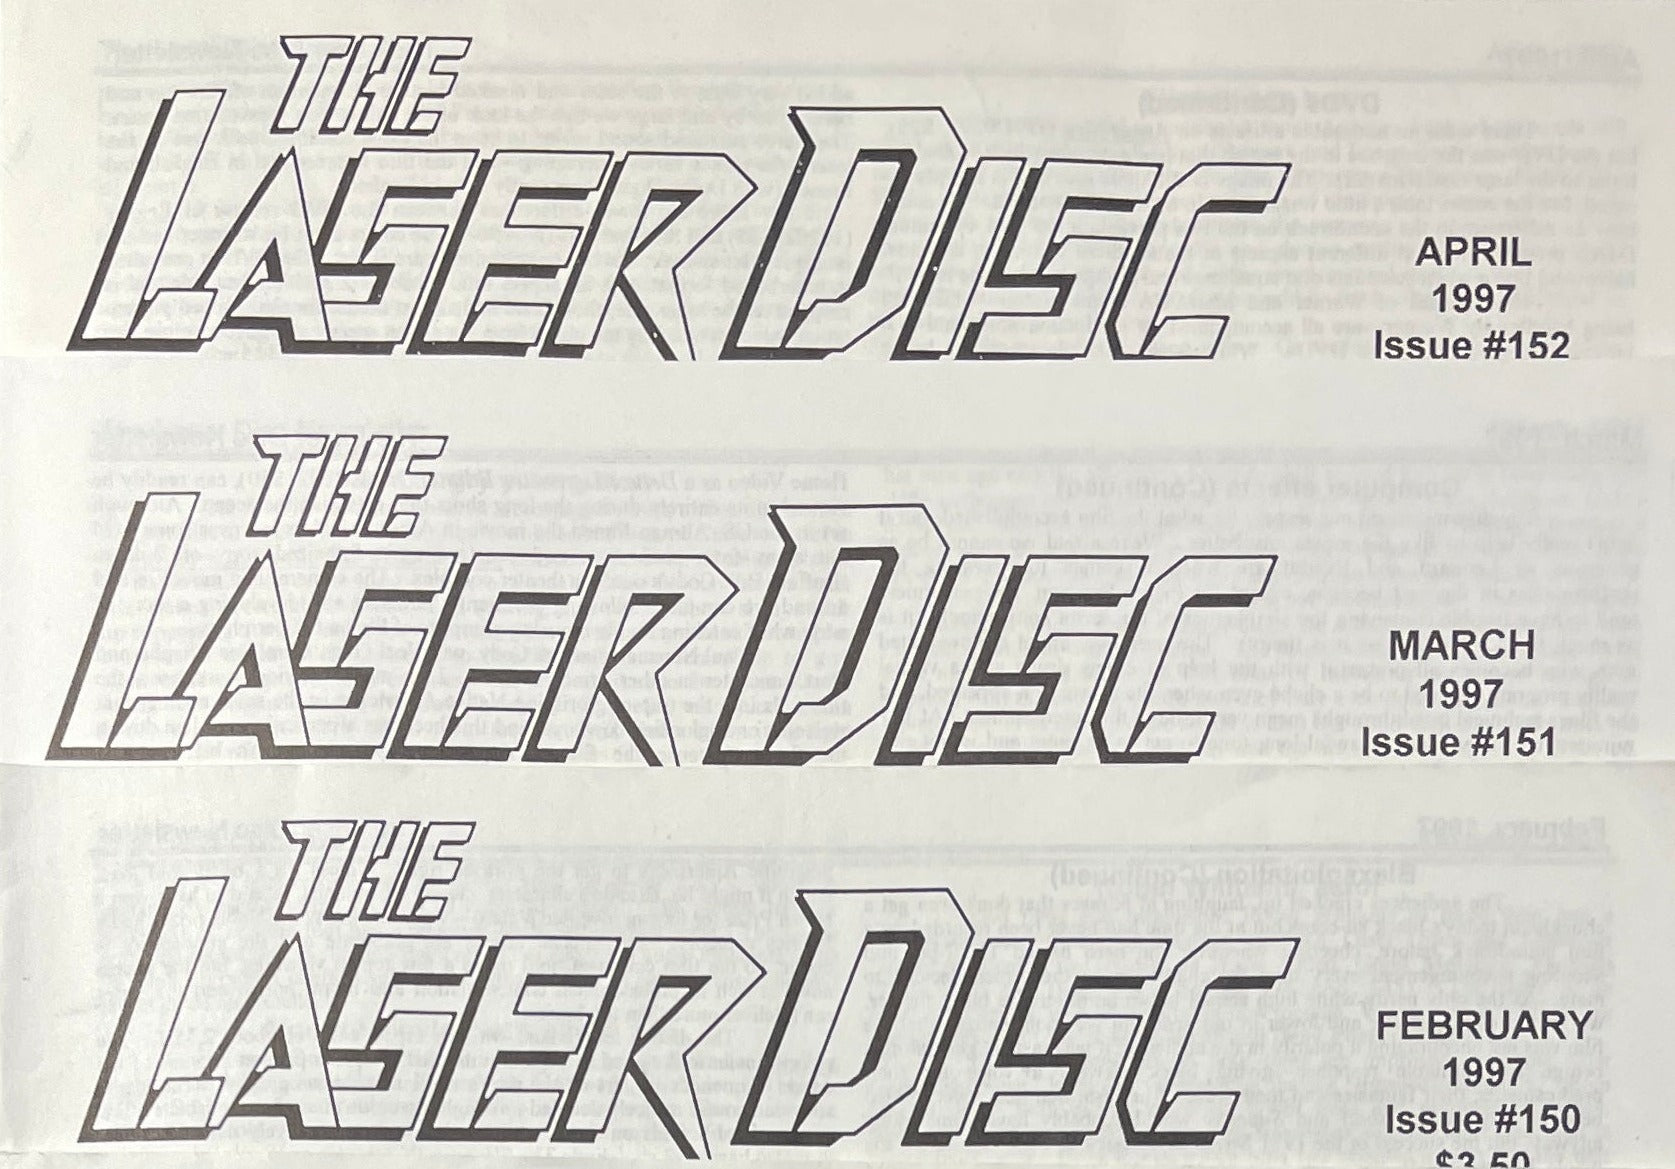 Laser Disc Newsletter - 11 Issues (Feb.-Dec.) 1997 at Adirondack Retro